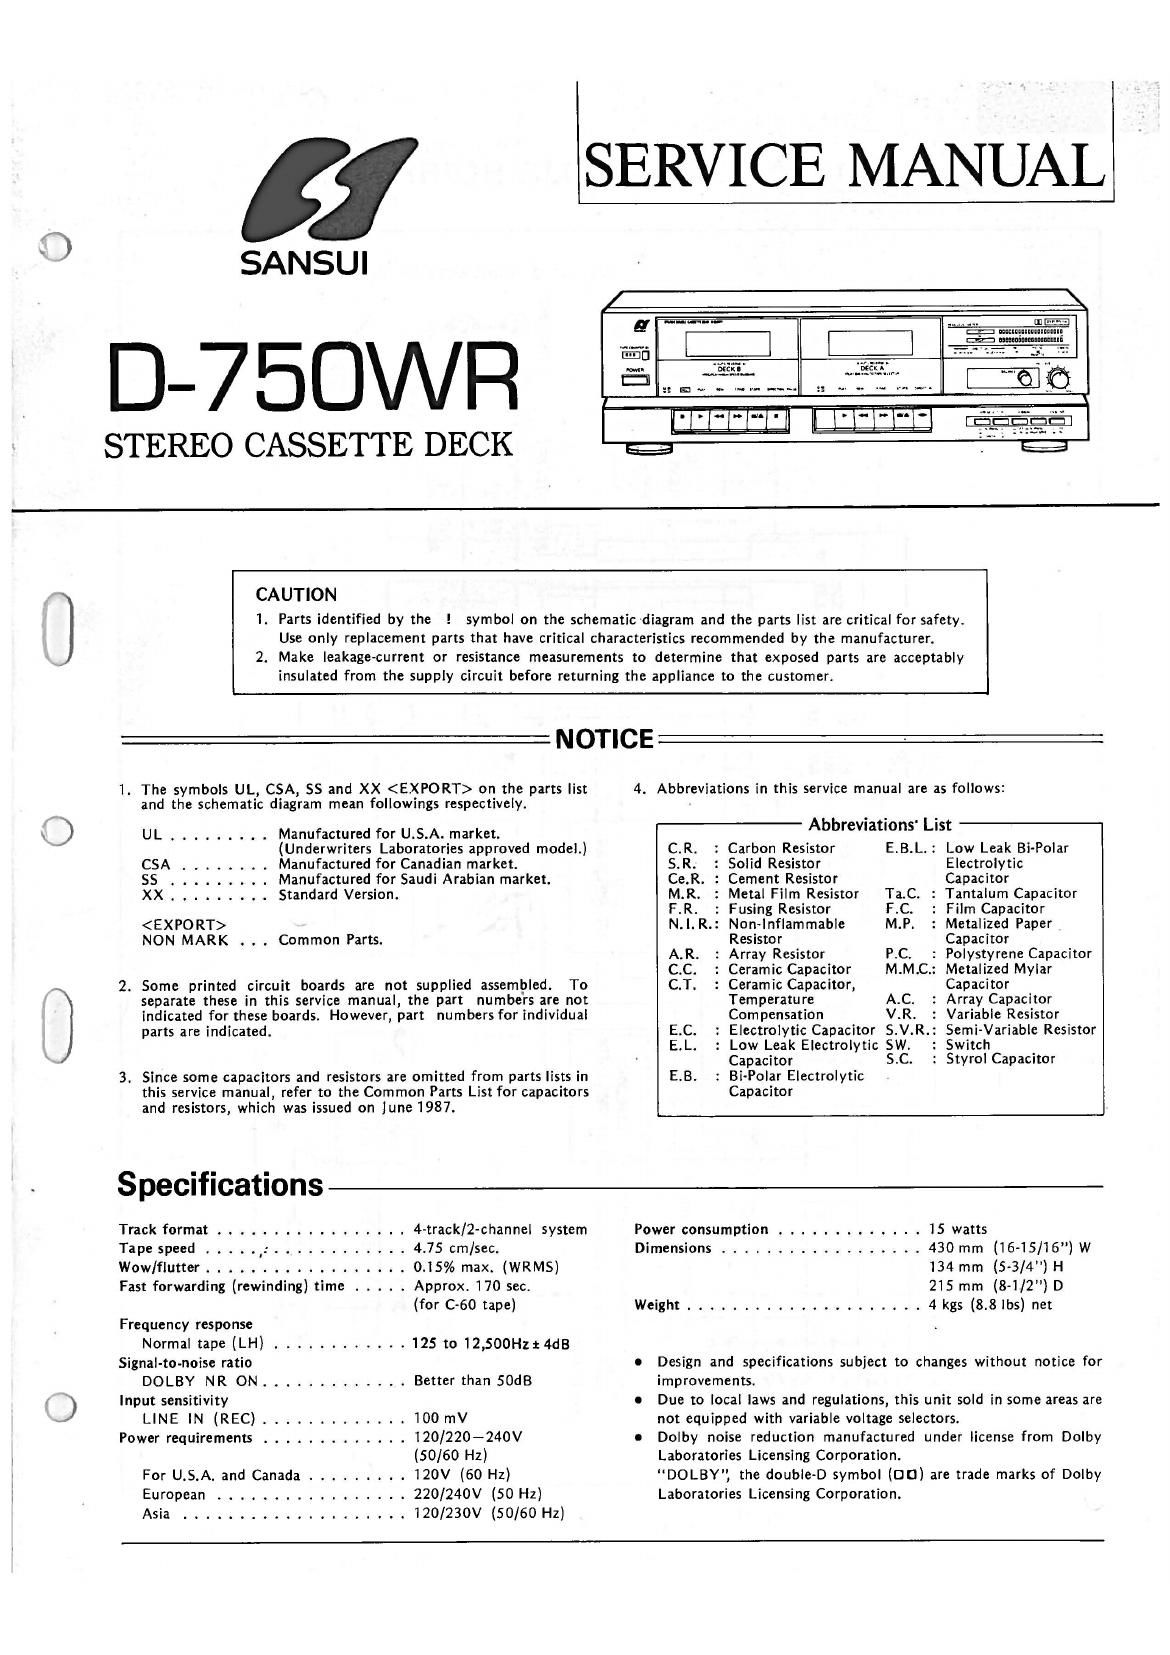 Sansui D 750 WR Service Manual